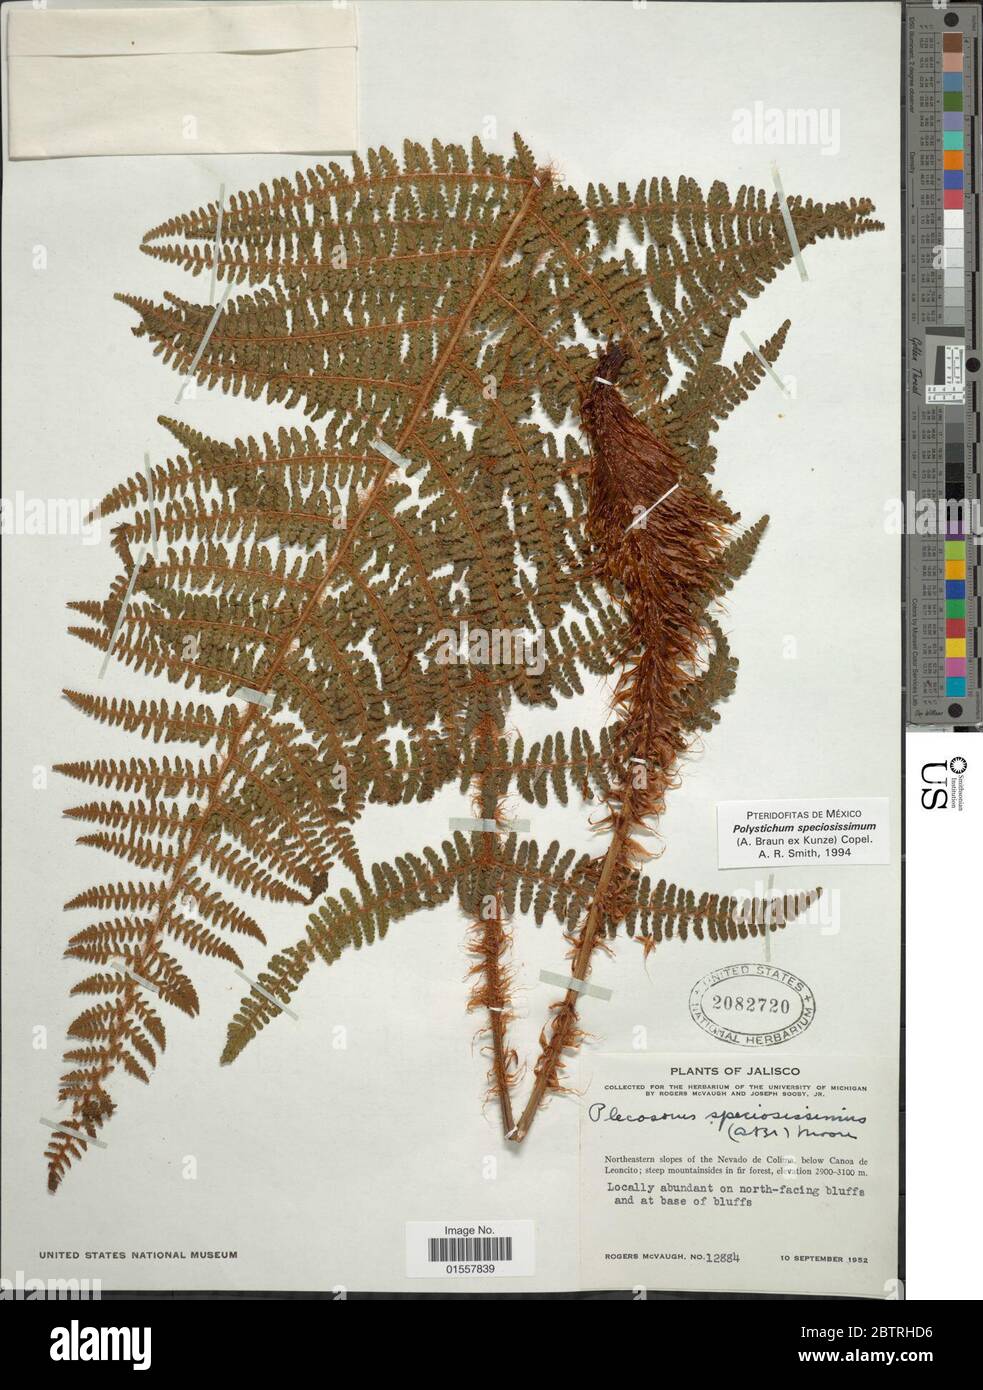 Polystichum speciosissimum A Braun ex Kunze Copel. Stock Photo